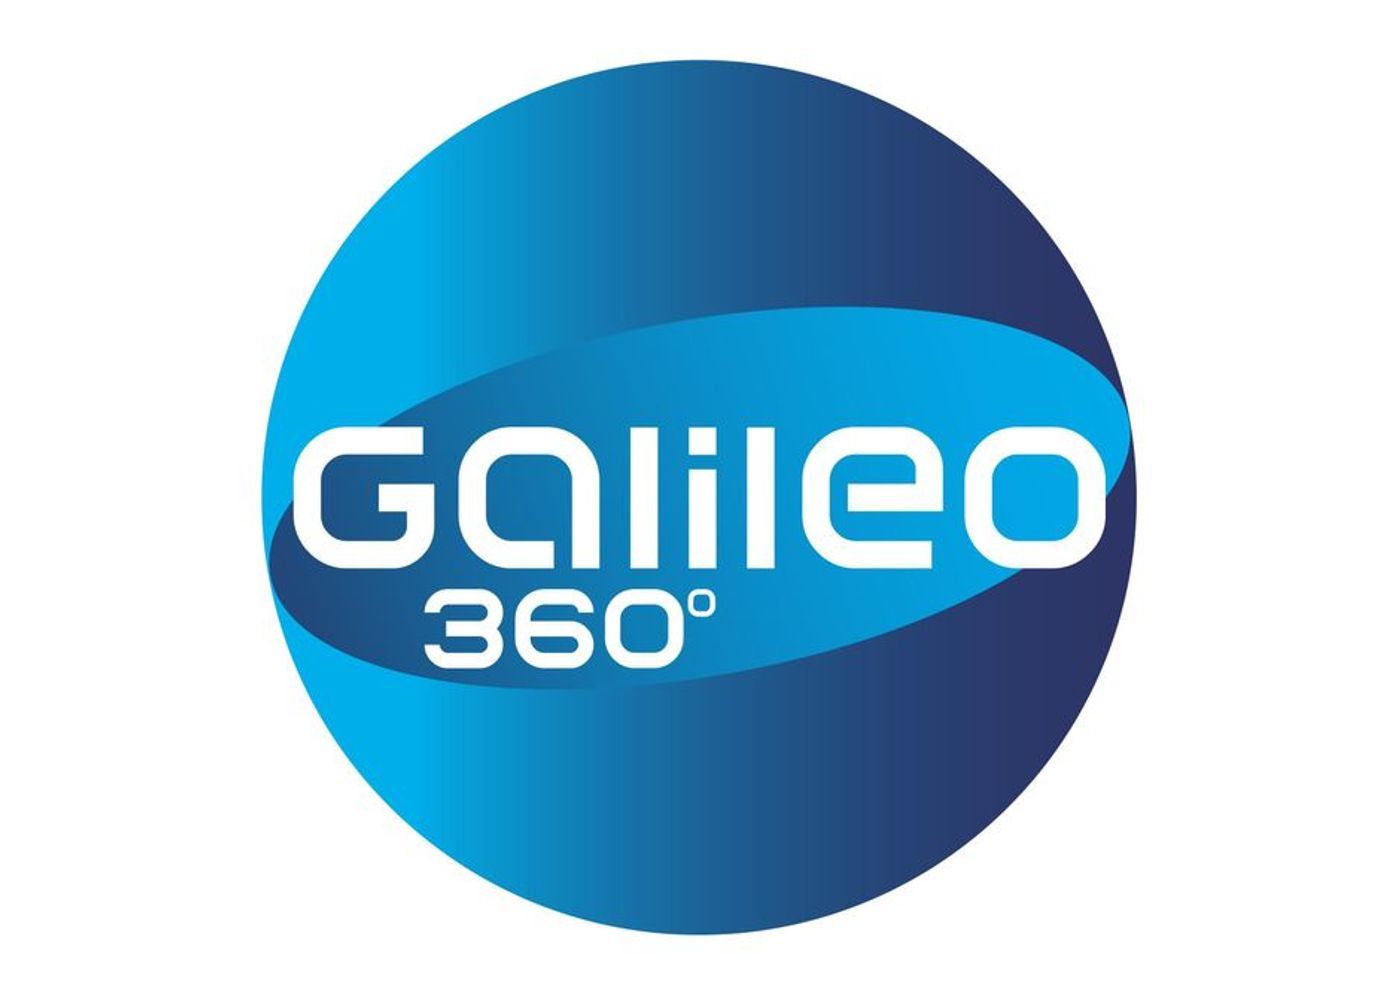 Galileo 360° Ranking XXL